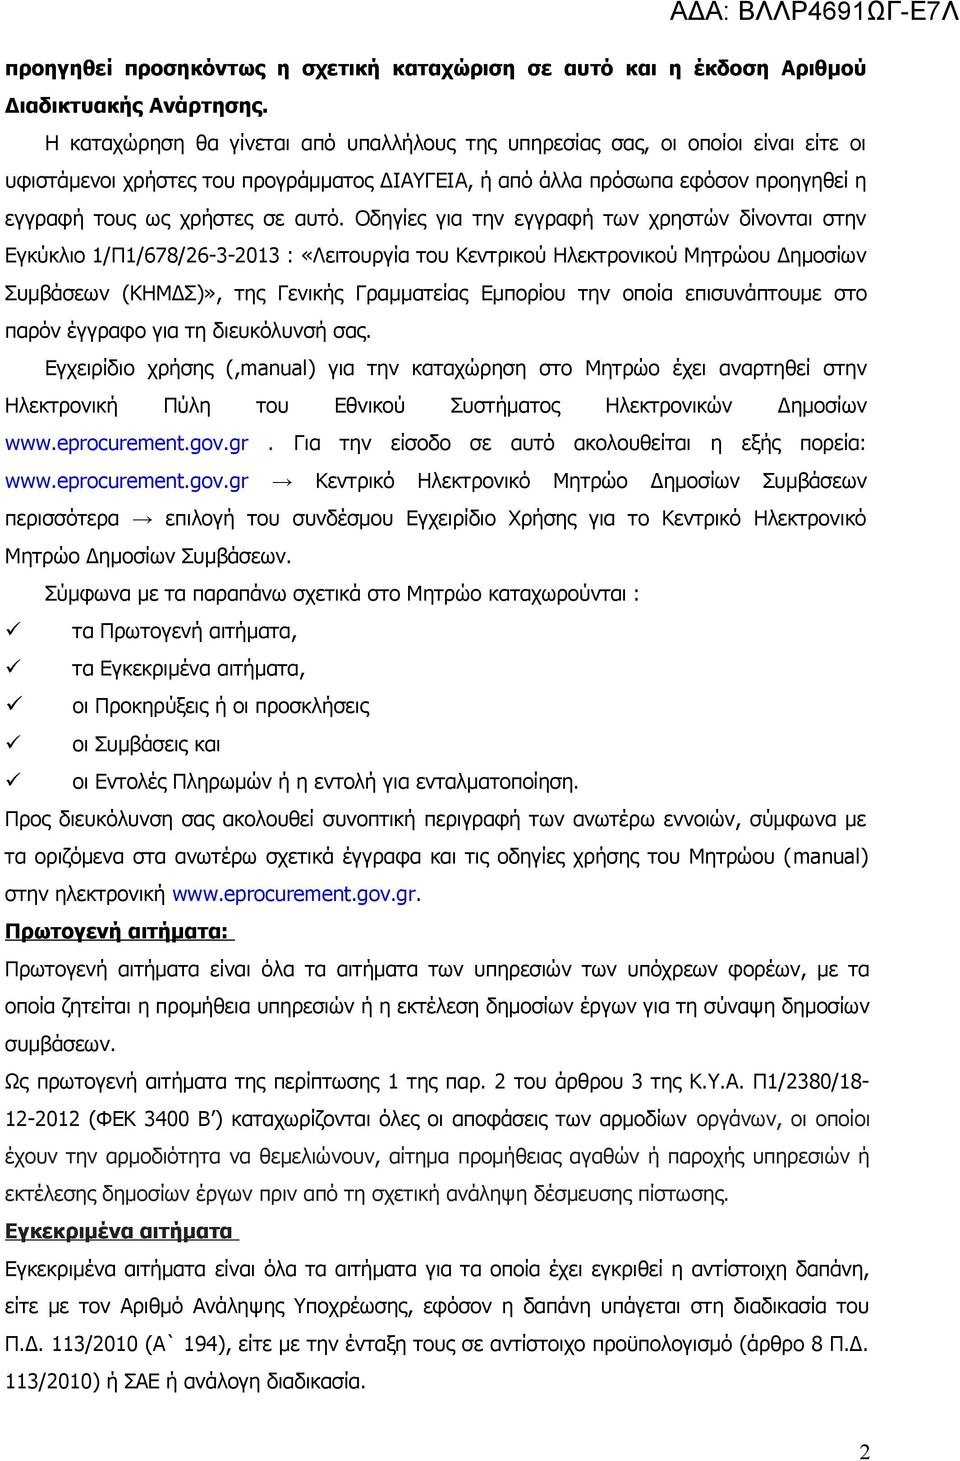 Οδηγίες για την εγγραφή των χρηστών δίνονται στην Εγκύκλιο 1/Π1/678/26-3-2013 : «Λειτουργία του Κεντρικού Ηλεκτρονικού Μητρώου Δημοσίων Συμβάσεων (ΚΗΜΔΣ)», της Γενικής Γραμματείας Εμπορίου την οποία